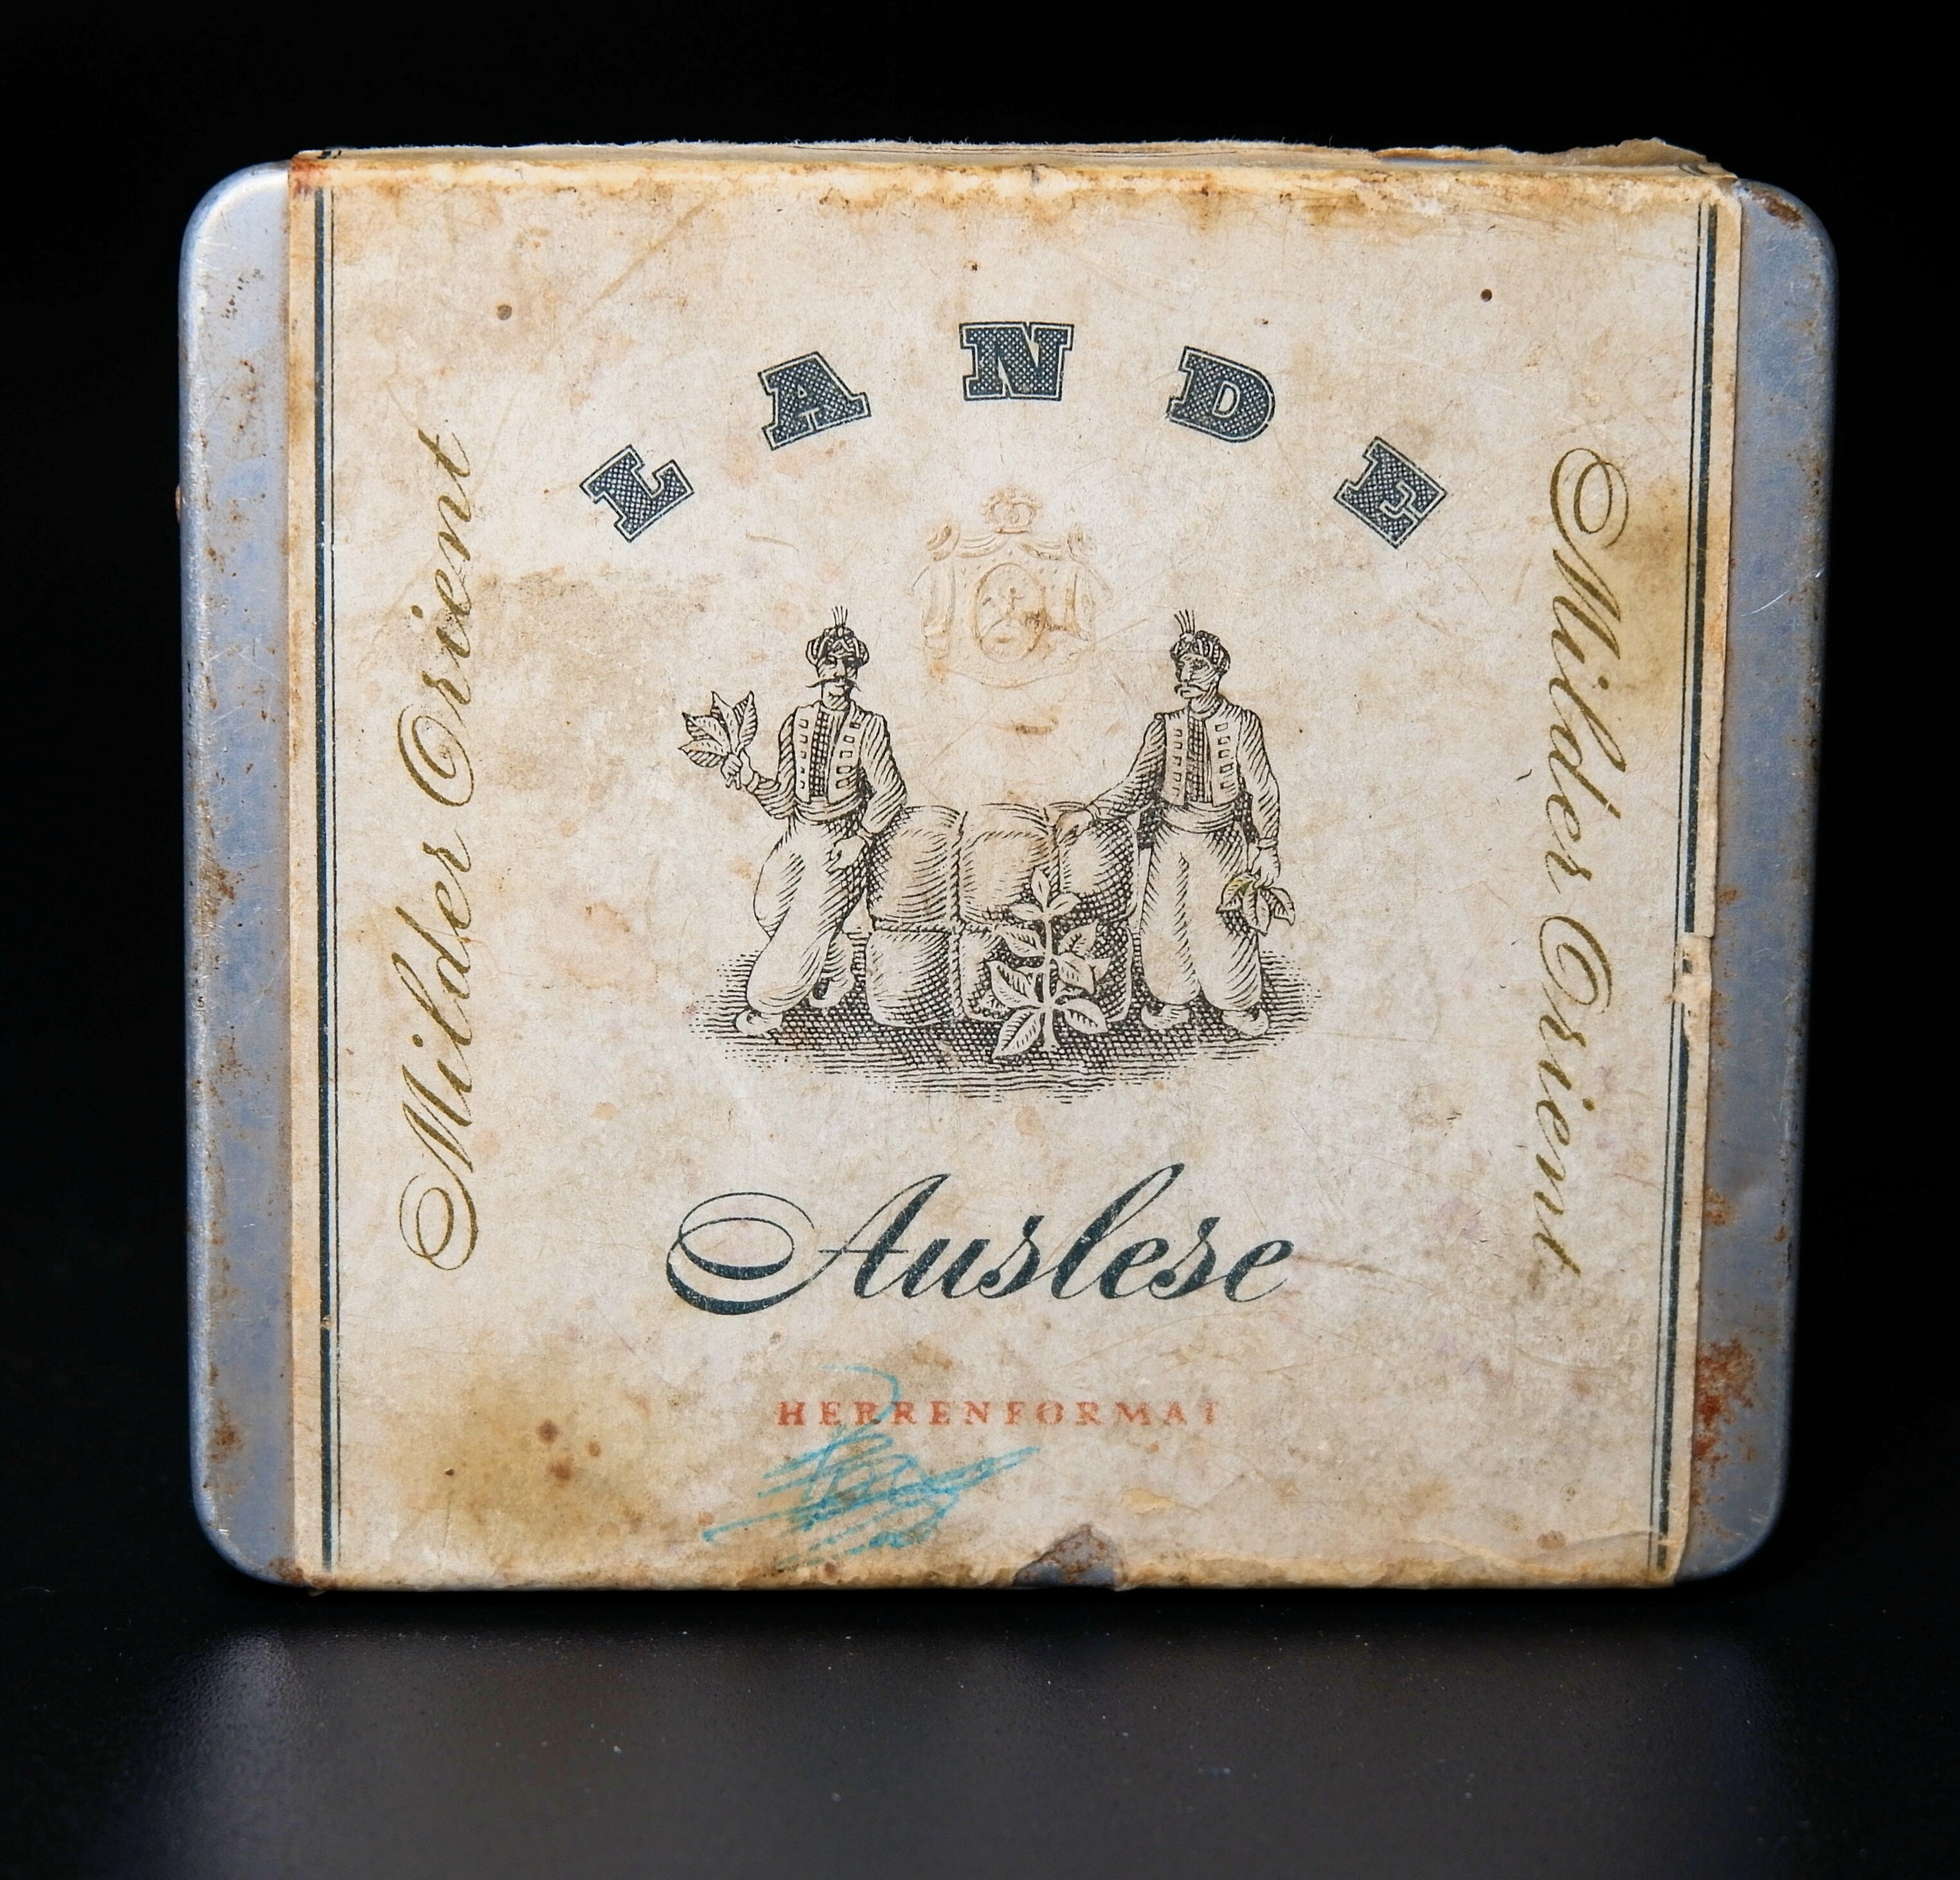 Zigarettenmarke	Lande Auslese 20er Packung (Volkskunde- und Freilichtmuseum Roscheider Hof CC0)